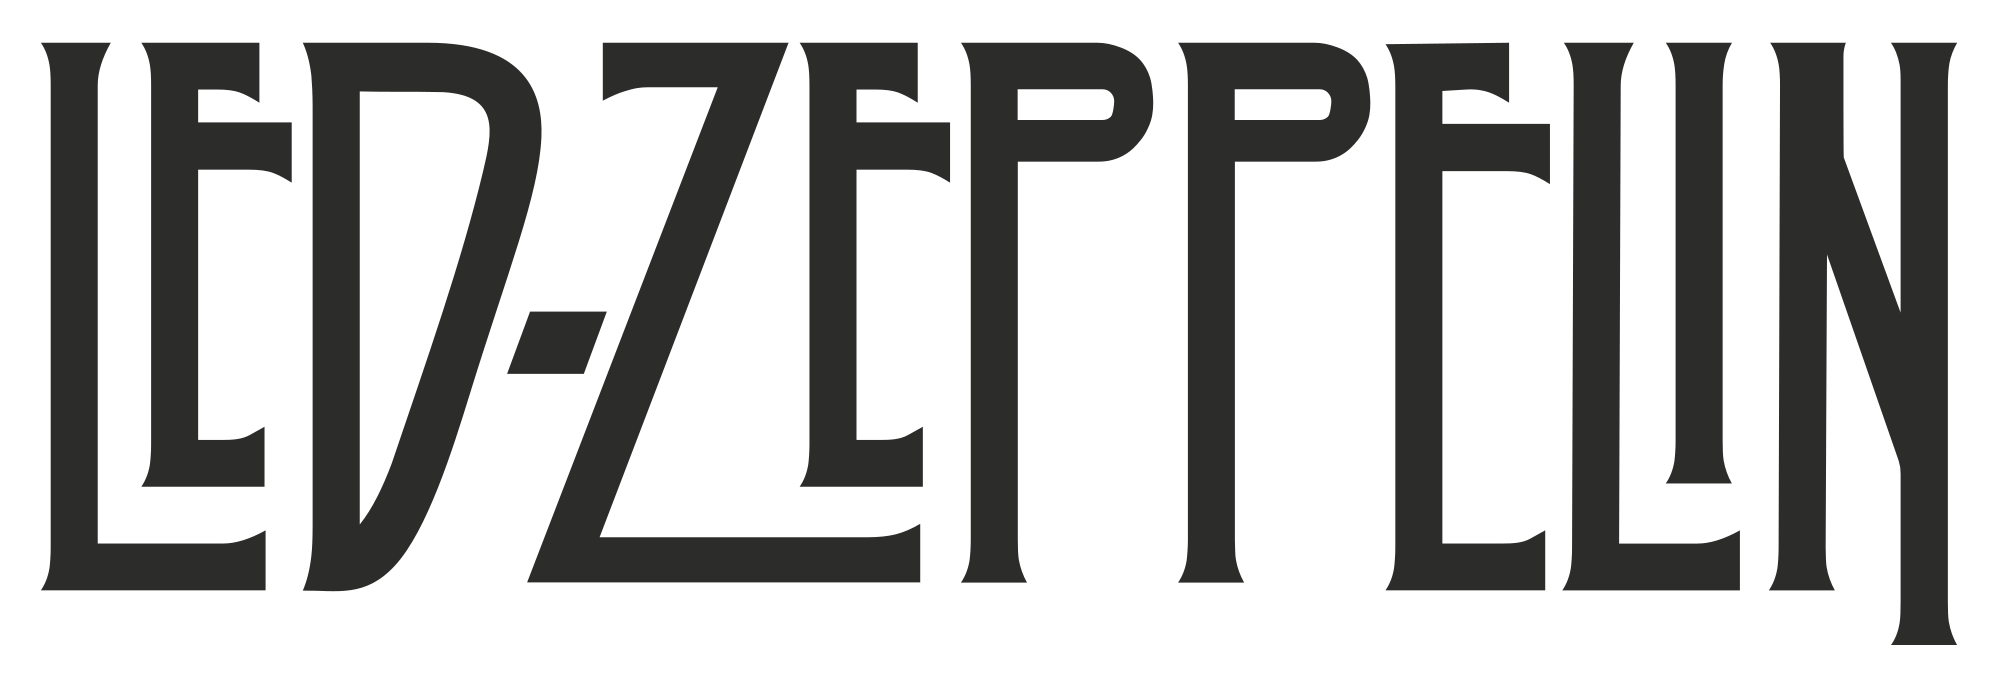 LED Zeppelin Logo - Led Zeppelin logo.svg